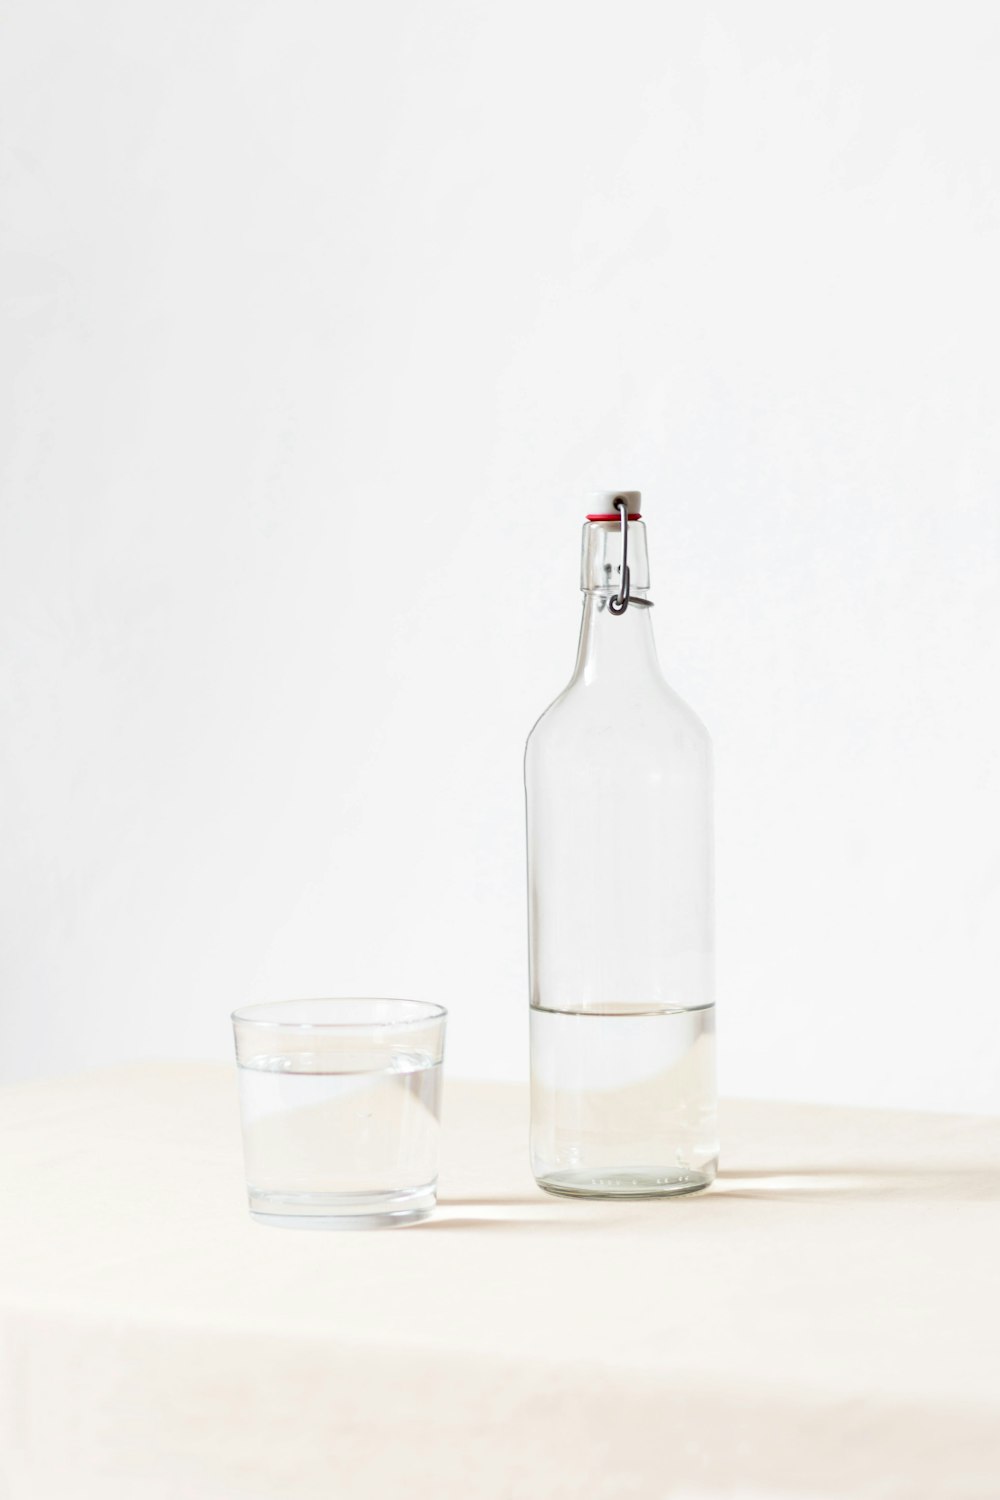 Rocce di vetro accanto alla bottiglia mezza vuota su superficie bianca